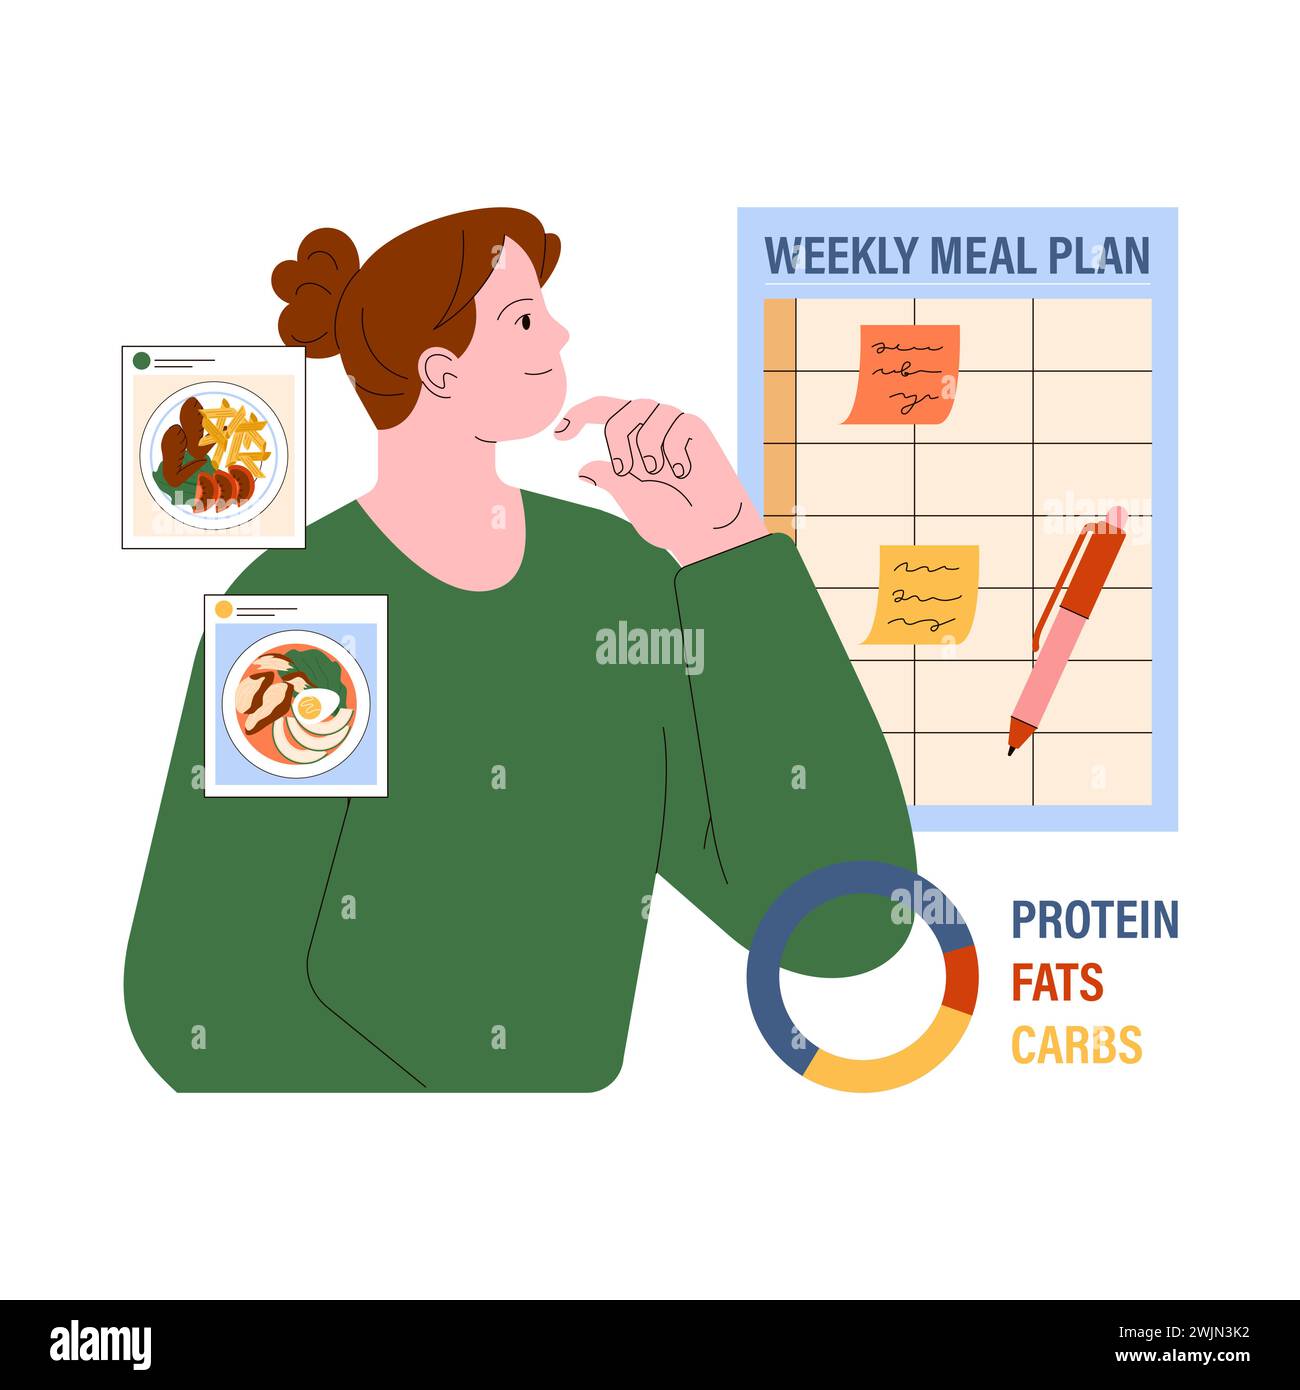 Pianificazione dei pasti. La donna contempla una dieta bilanciata con una tabella settimanale dei pasti, con l'obiettivo di ridurre gli sprechi di cibo. Illustrazione vettoriale piatta. Illustrazione Vettoriale